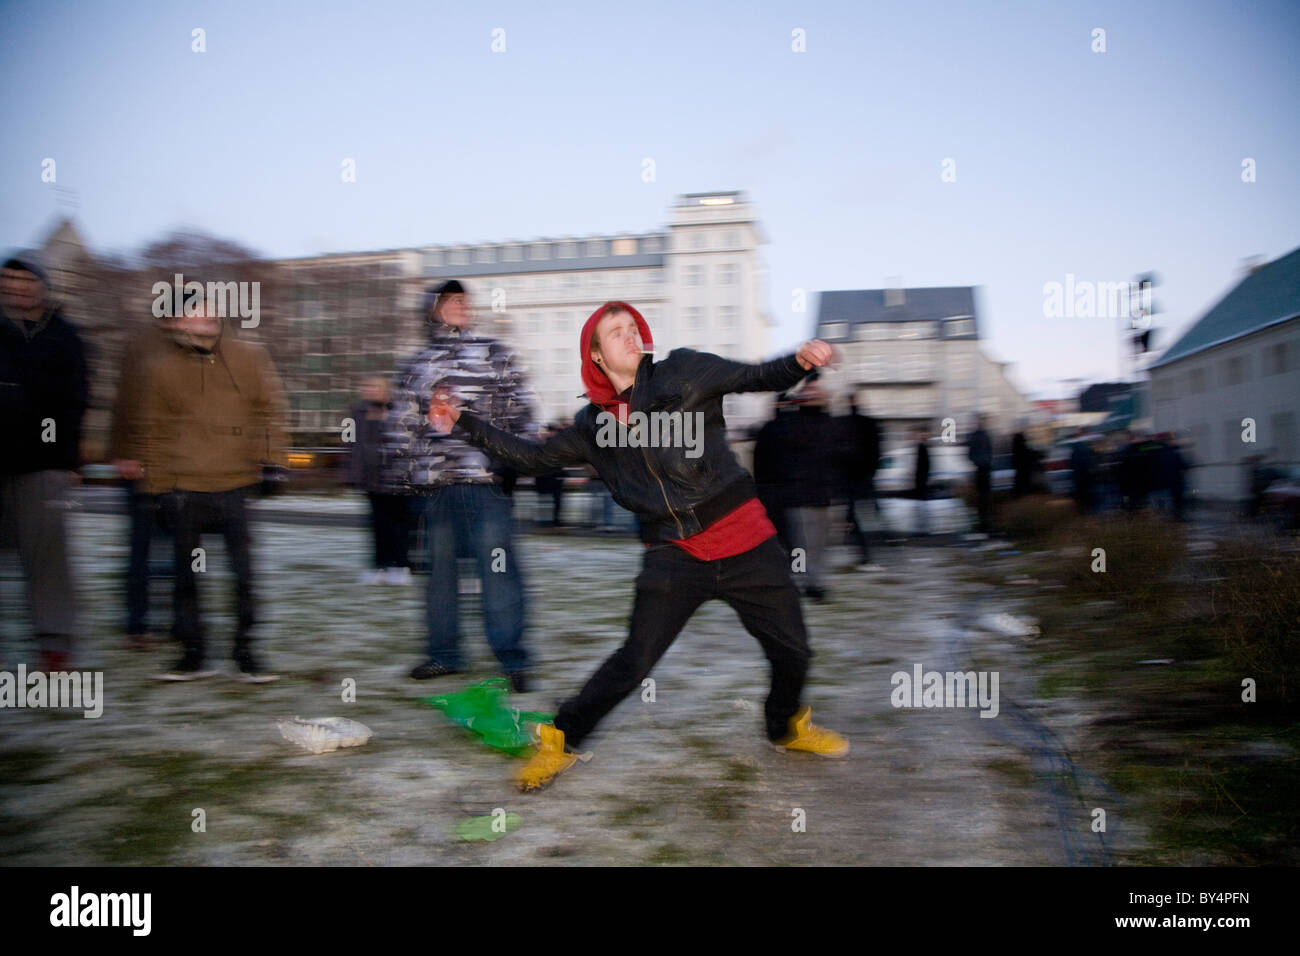 Le centre-ville de Reykjavík, Islande : manifestants protester devant le Parlement islandais. Jeune homme jette des tomates à l'Parli Banque D'Images